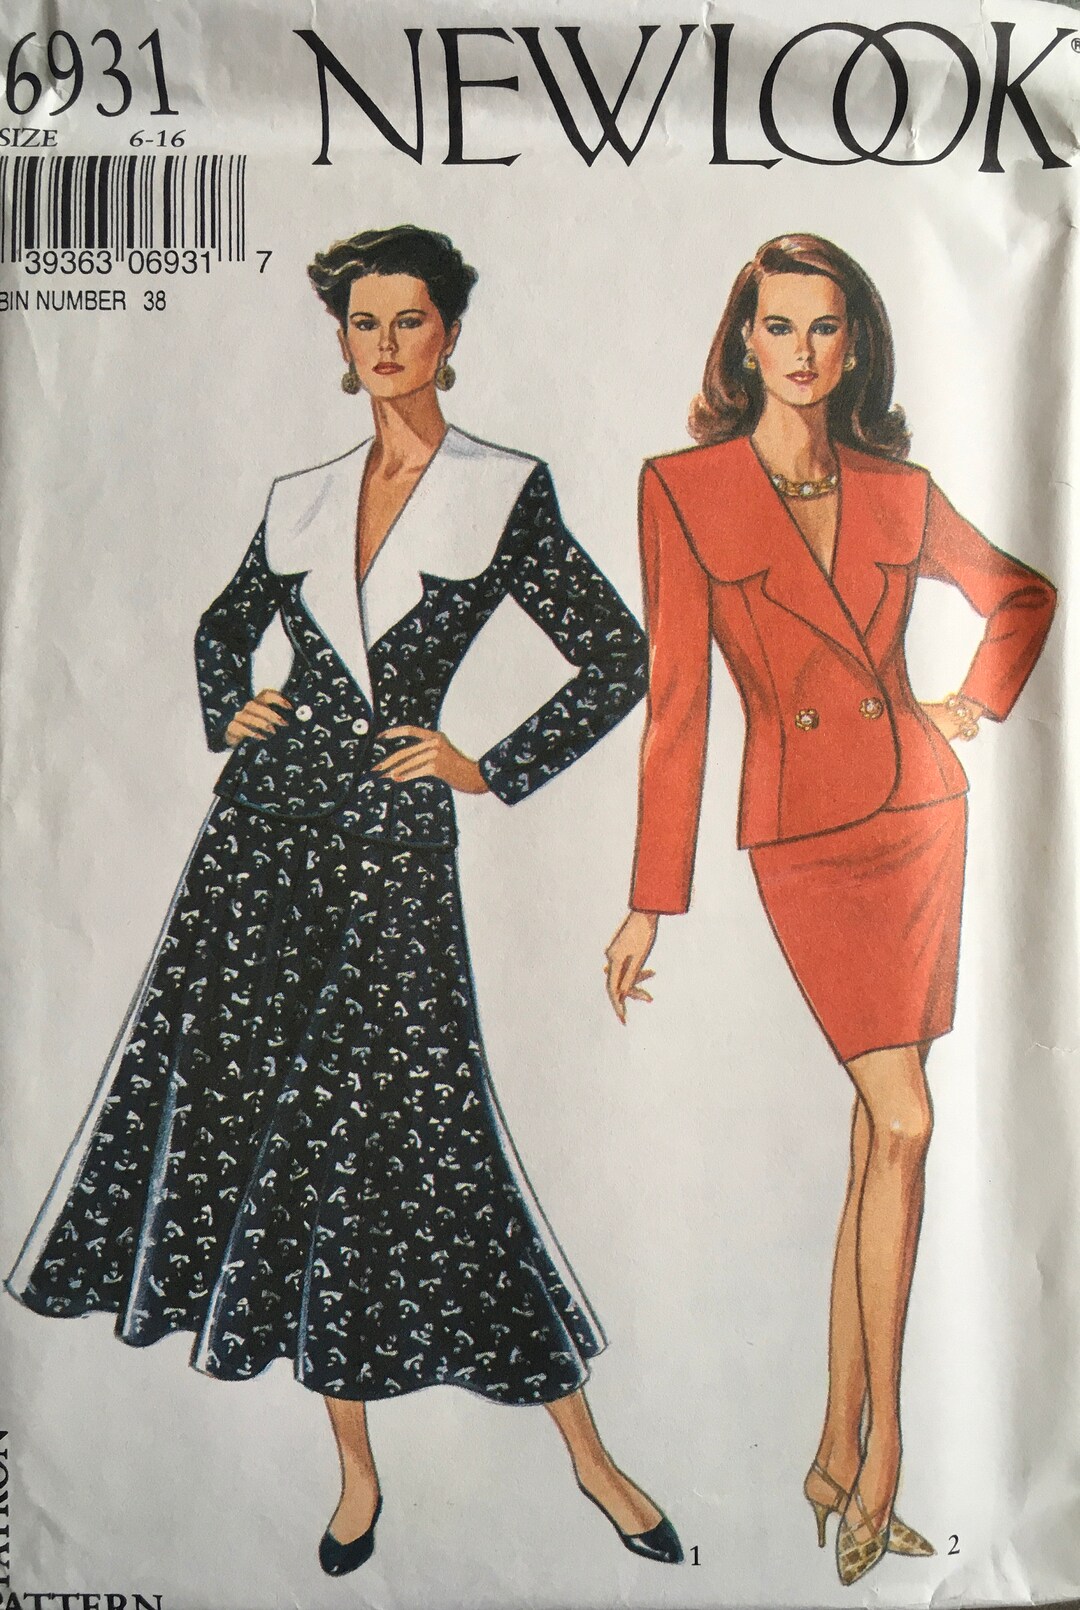 New Look 6931 Sewing Pattern vintage UNCUT - Etsy